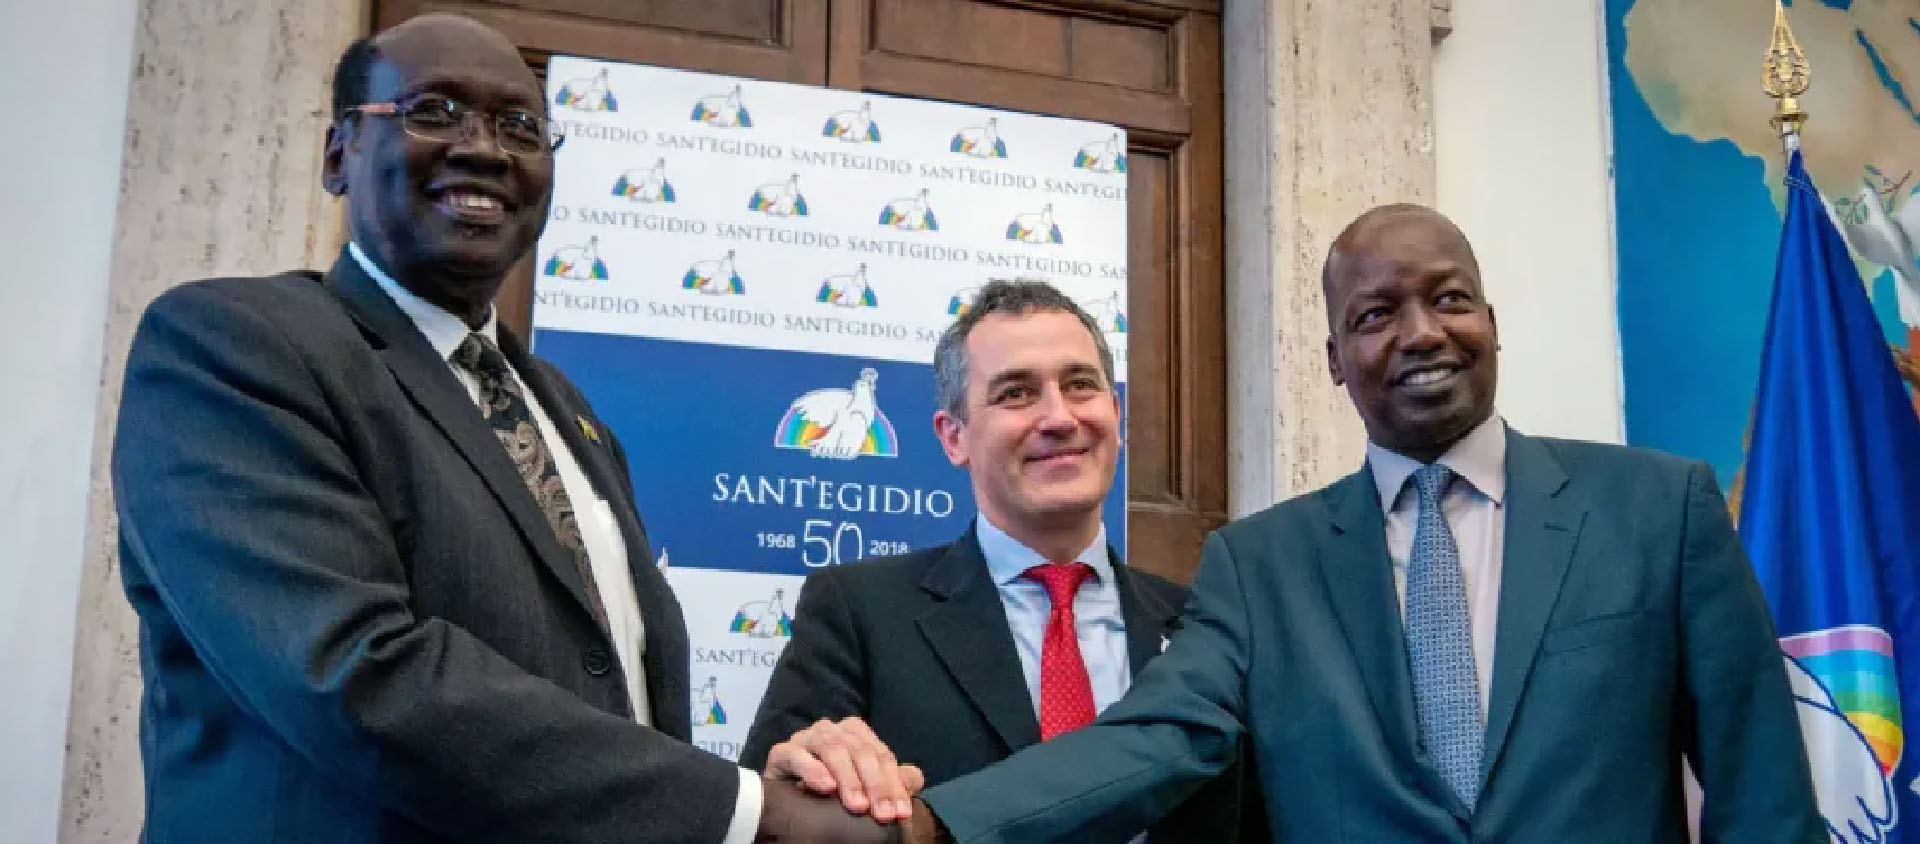 Paolo Impagliazzo entouré par les signataires de la Déclaration de Rome en 2020 | © Sant'Egidio